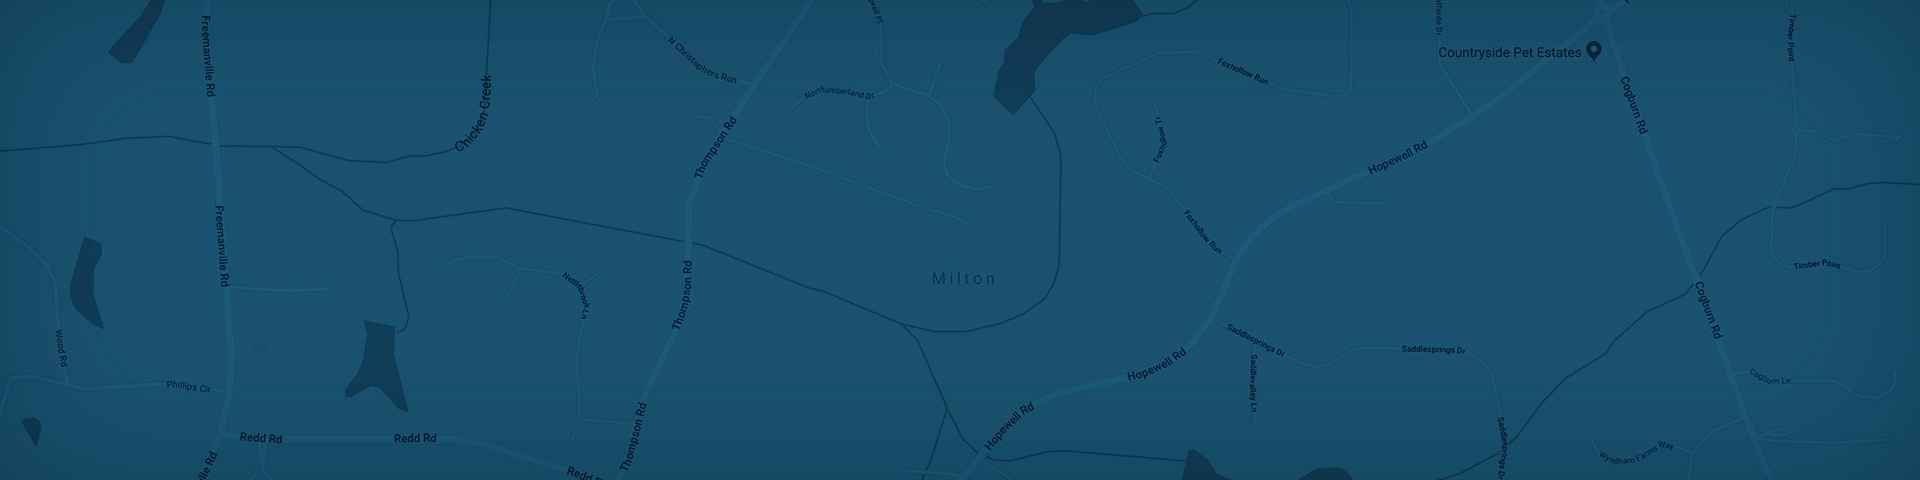 Milton Map